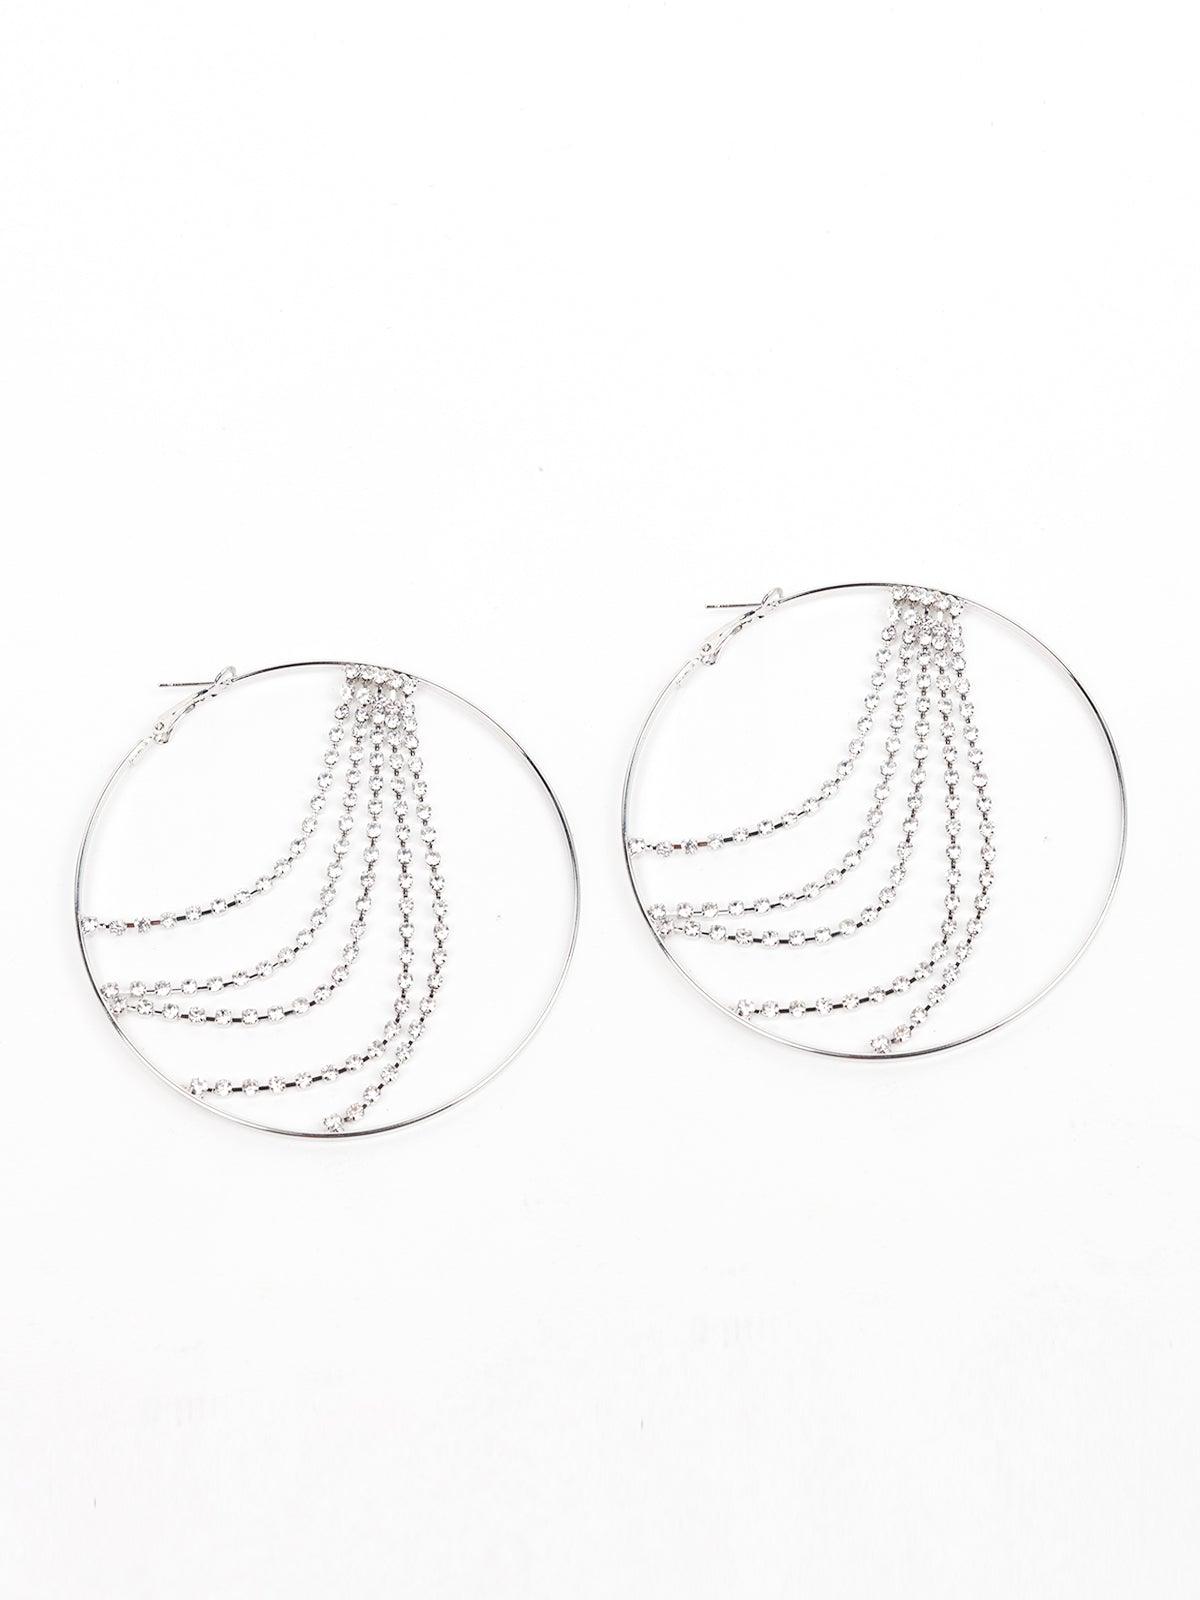 Silver Hoop Earrings With Crystal Strings Embedded - Odette